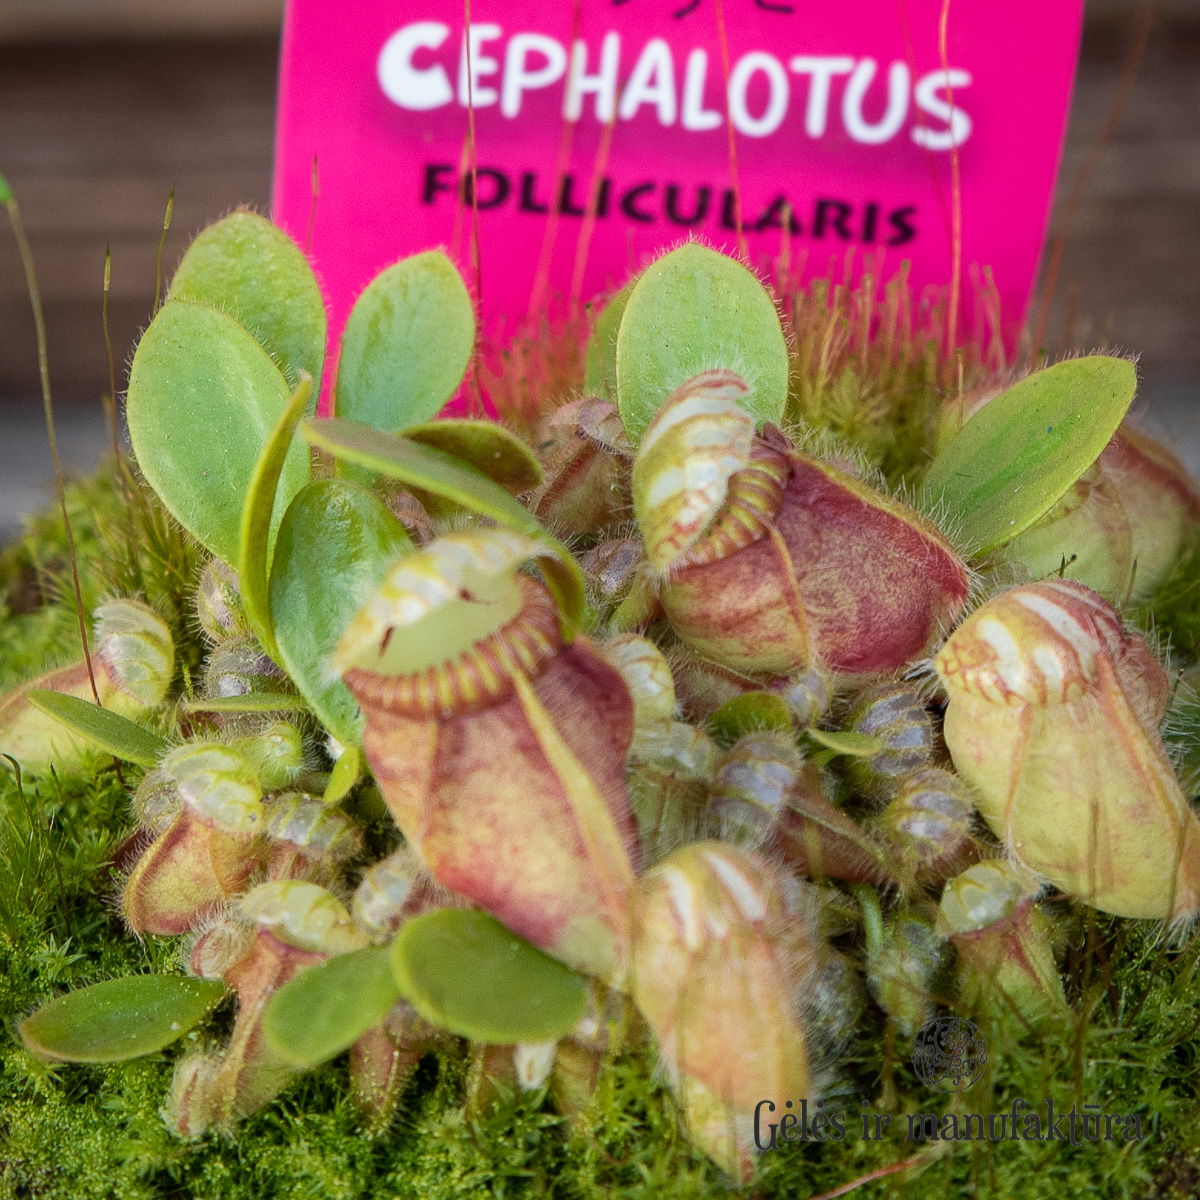 augalai geles ir manufaktura flowershop heliamphora Musgaudis-Cephalotus-follicularis heliamphora heterodoxa minor carnivors vabzdziaedis